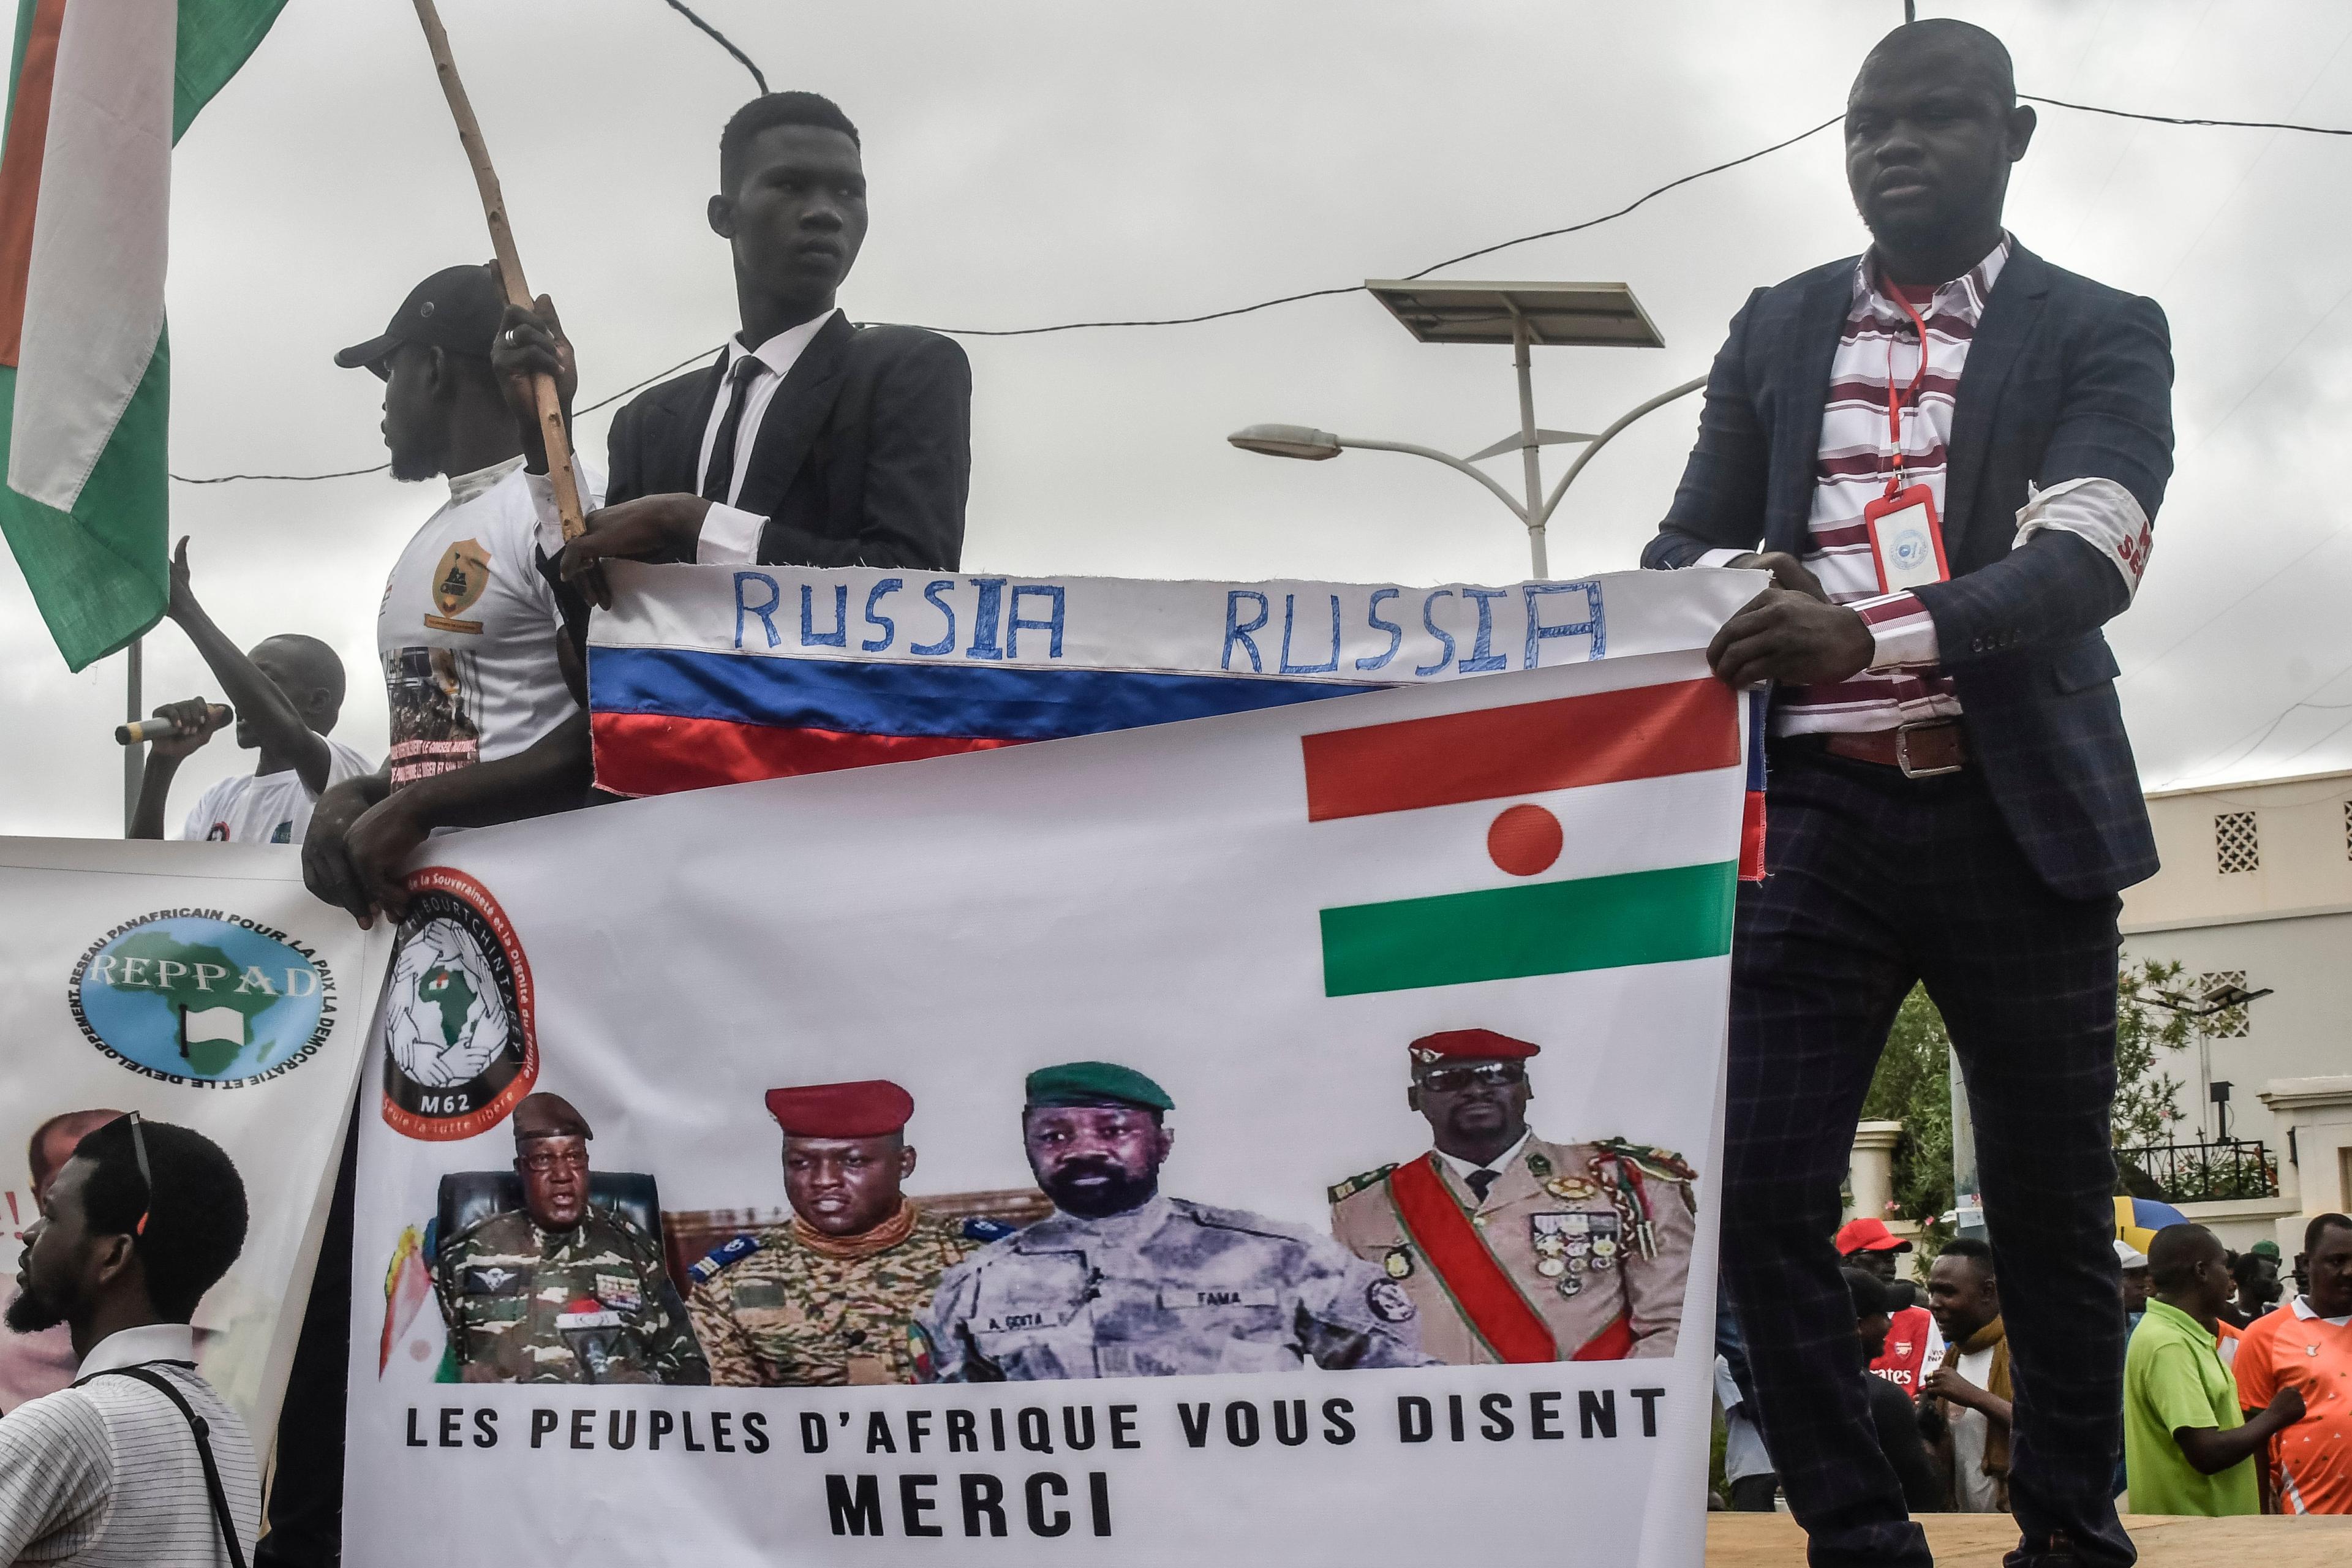 Afrykanie demonstrujący z flagami Rosji i banerem przedstawiającym wojskowych